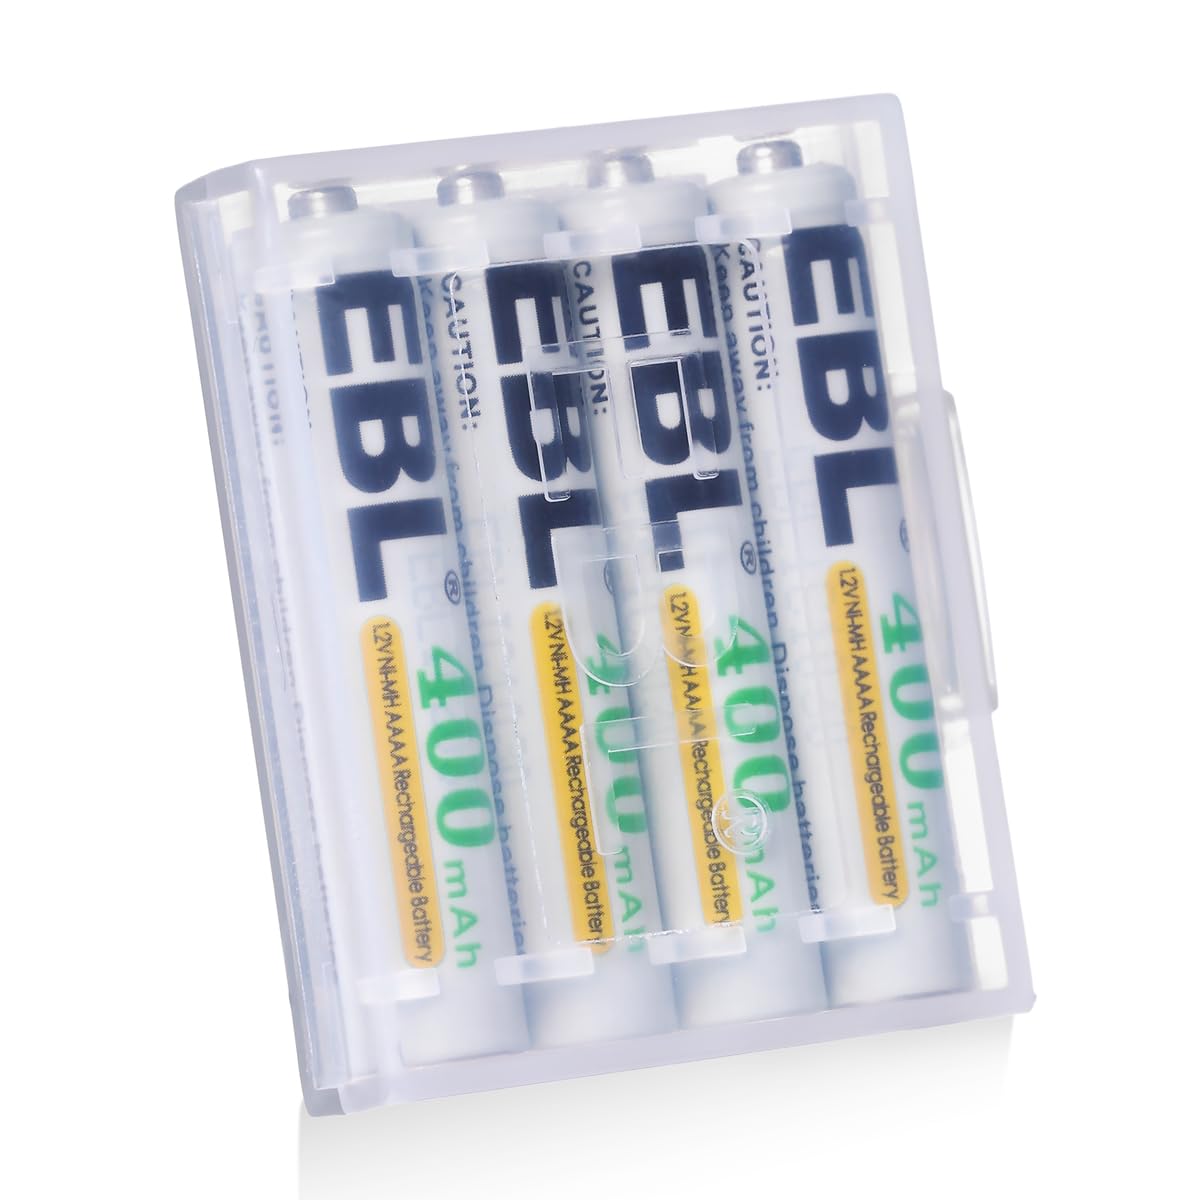 EBL 単6電池 充電式 タッチペンに適用 ケース付き 液漏れ防止 約1200回充電可能 ニッケル水素電池 単六電池*４個入り 400mAh aaaa 充電池